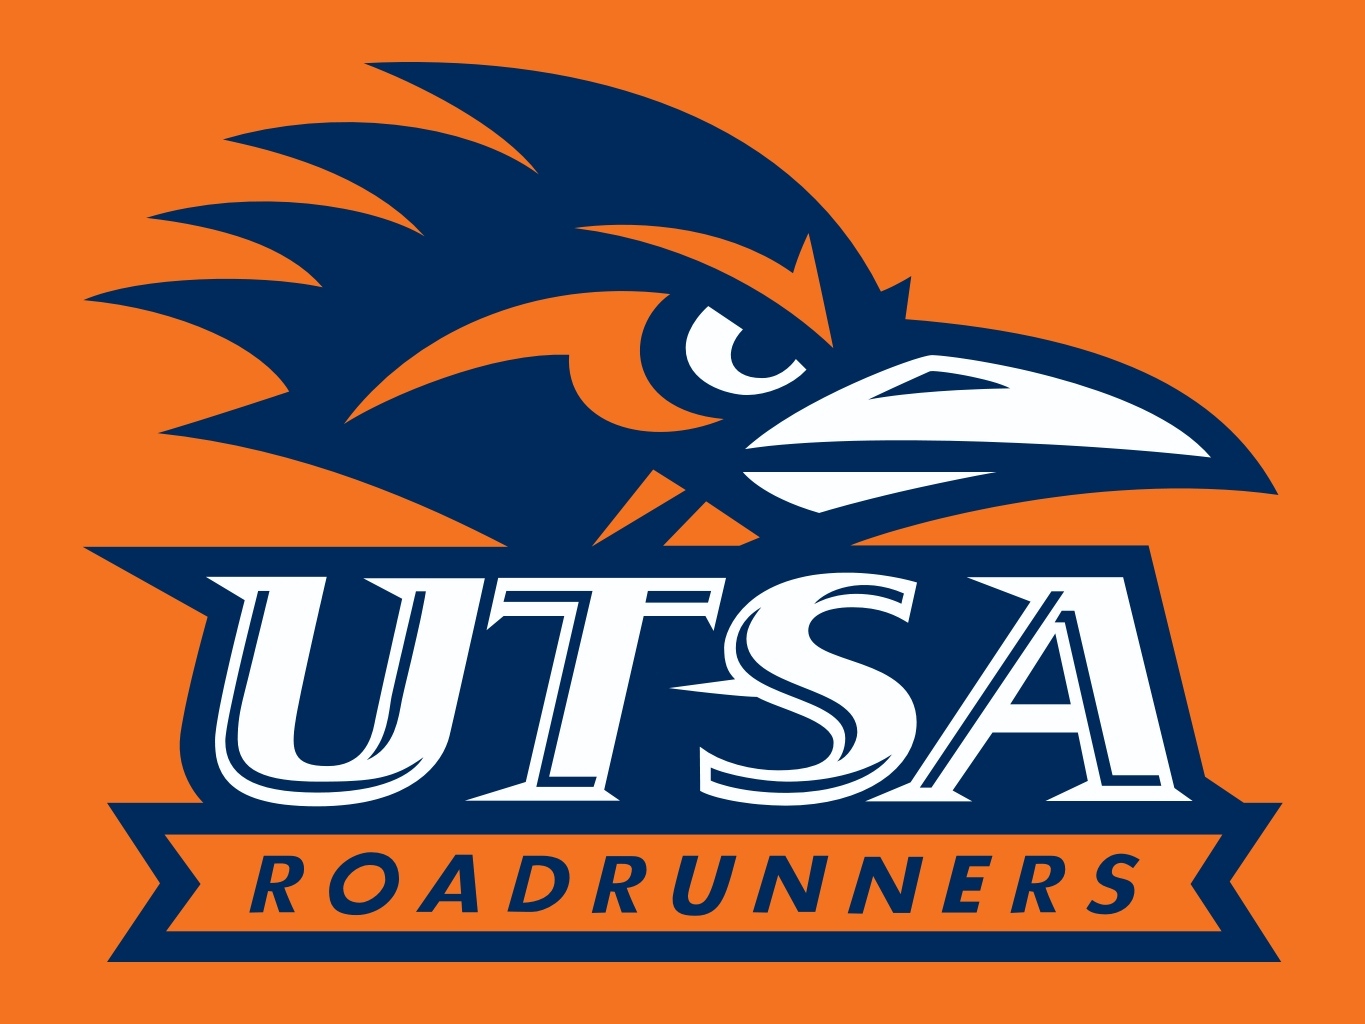 UTSA Roadrunners NCAA Football Wiki Fandom